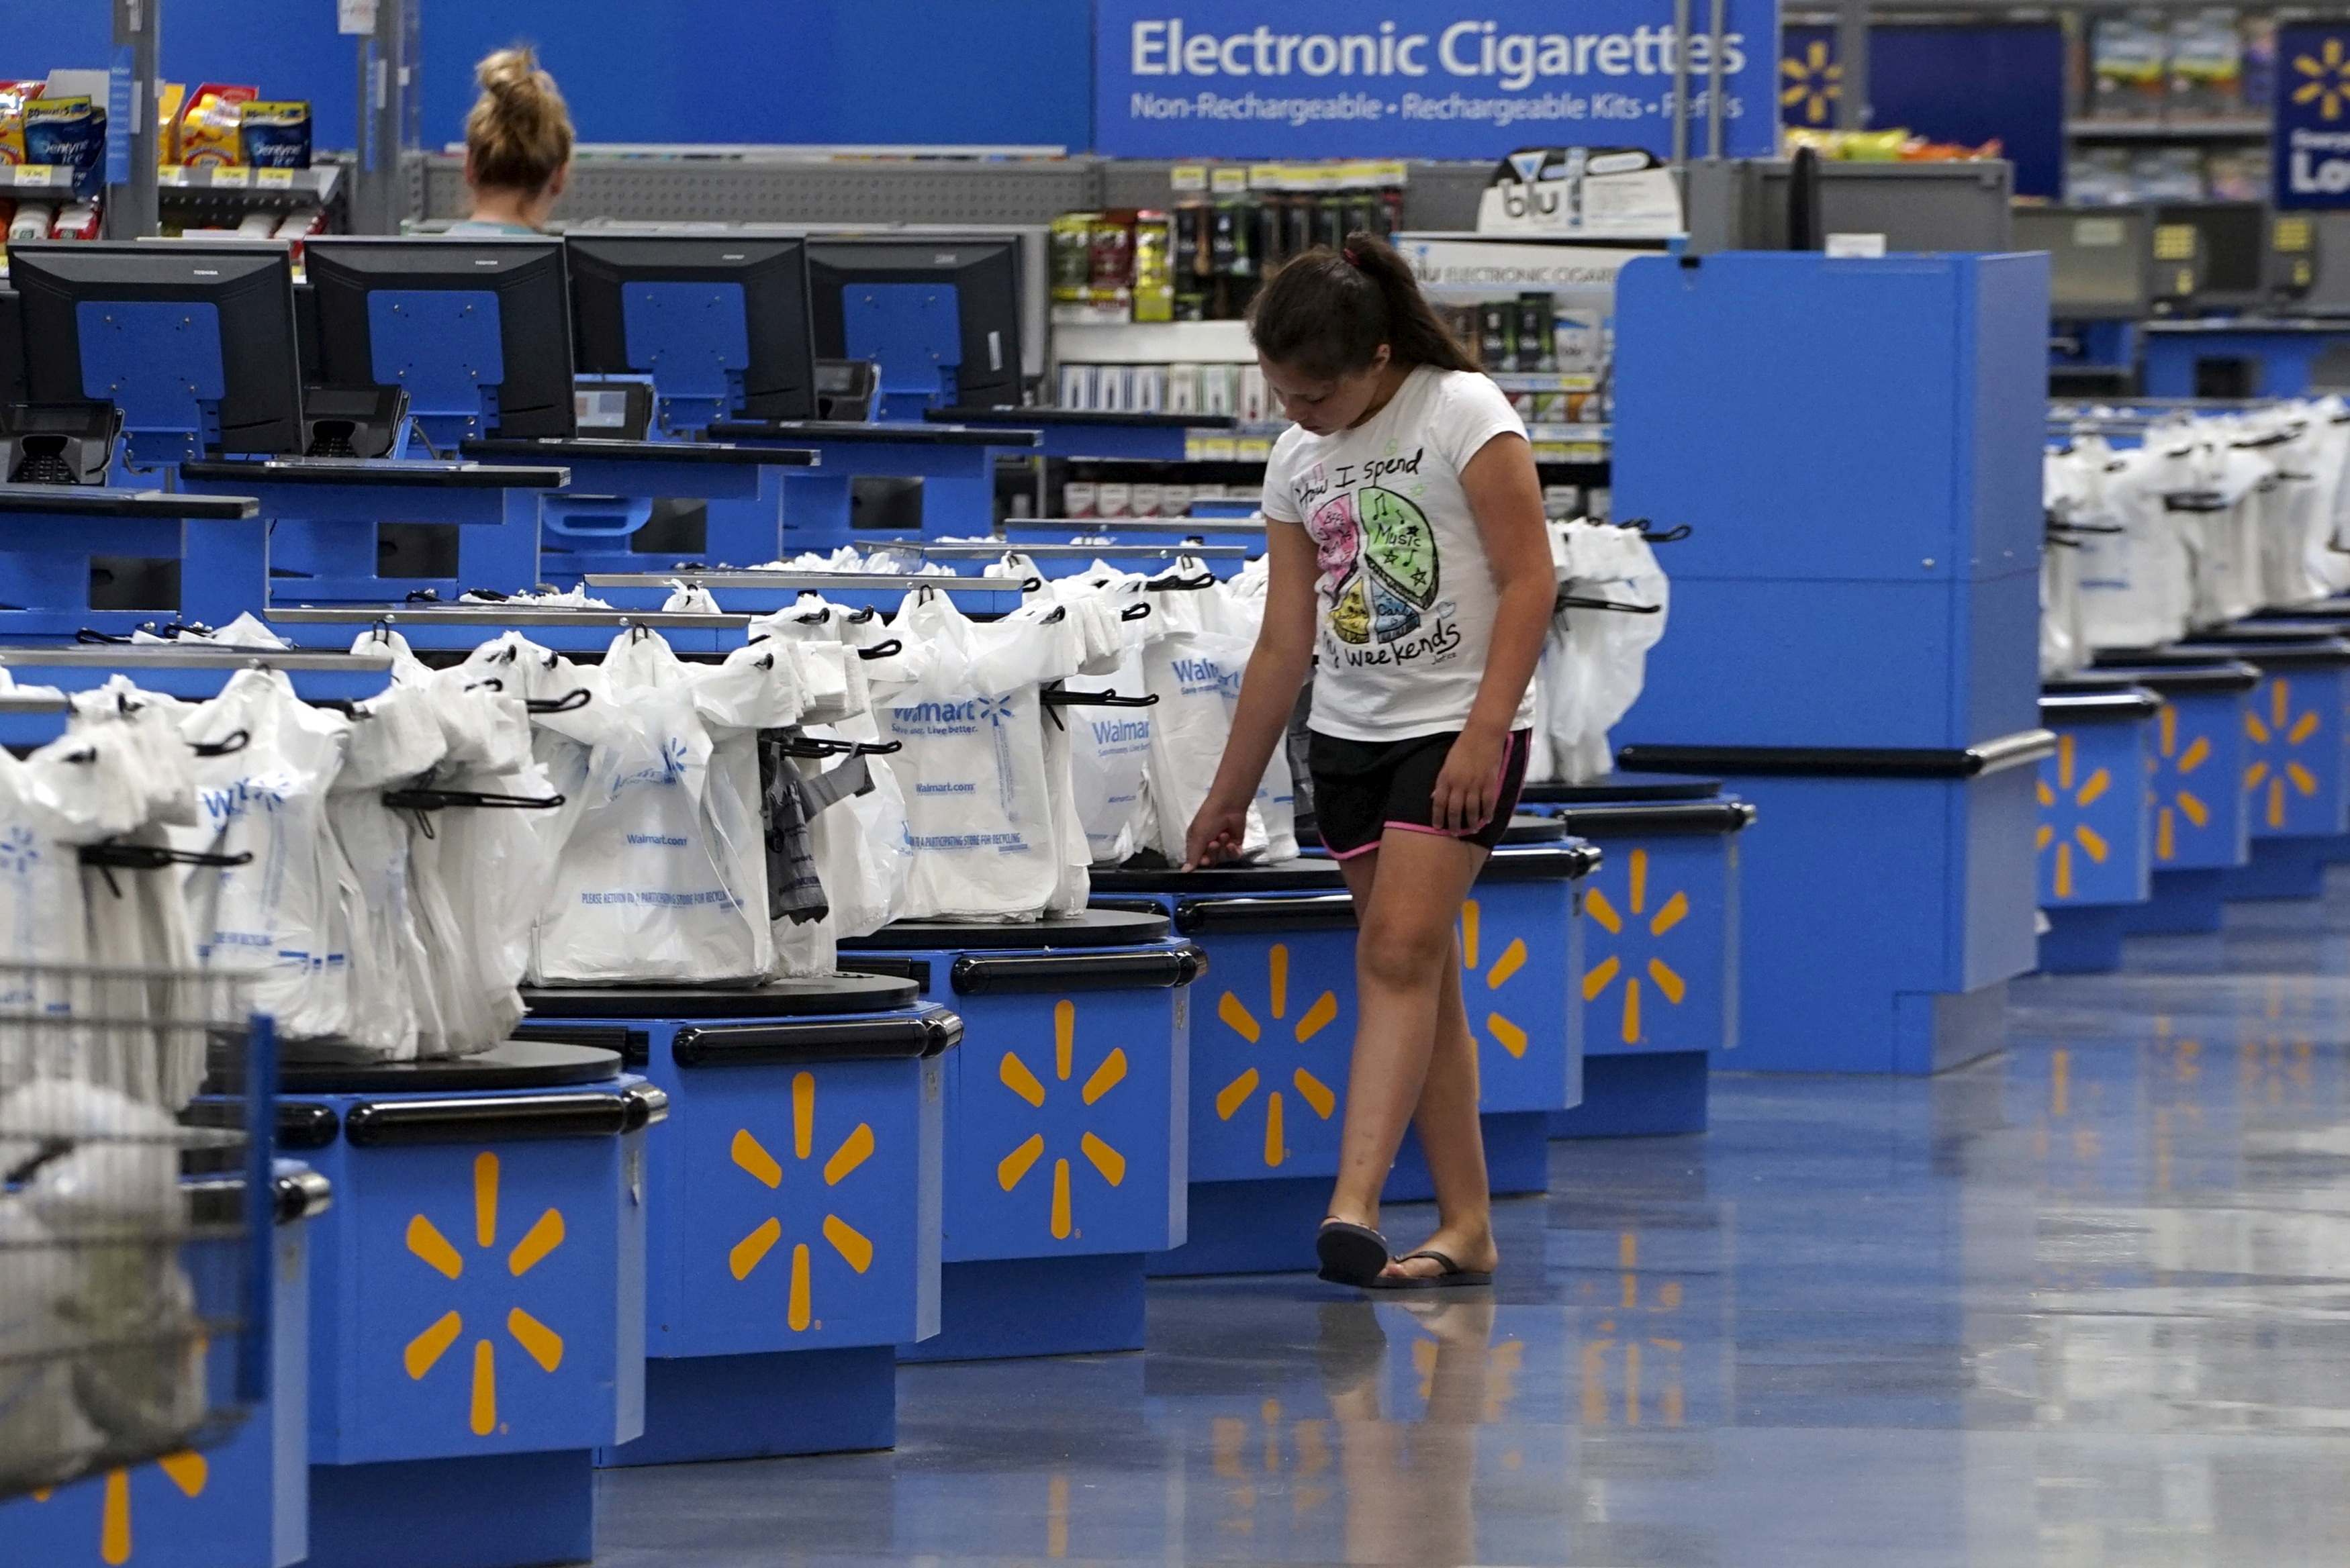 Walmart flexes as retail gets choppy